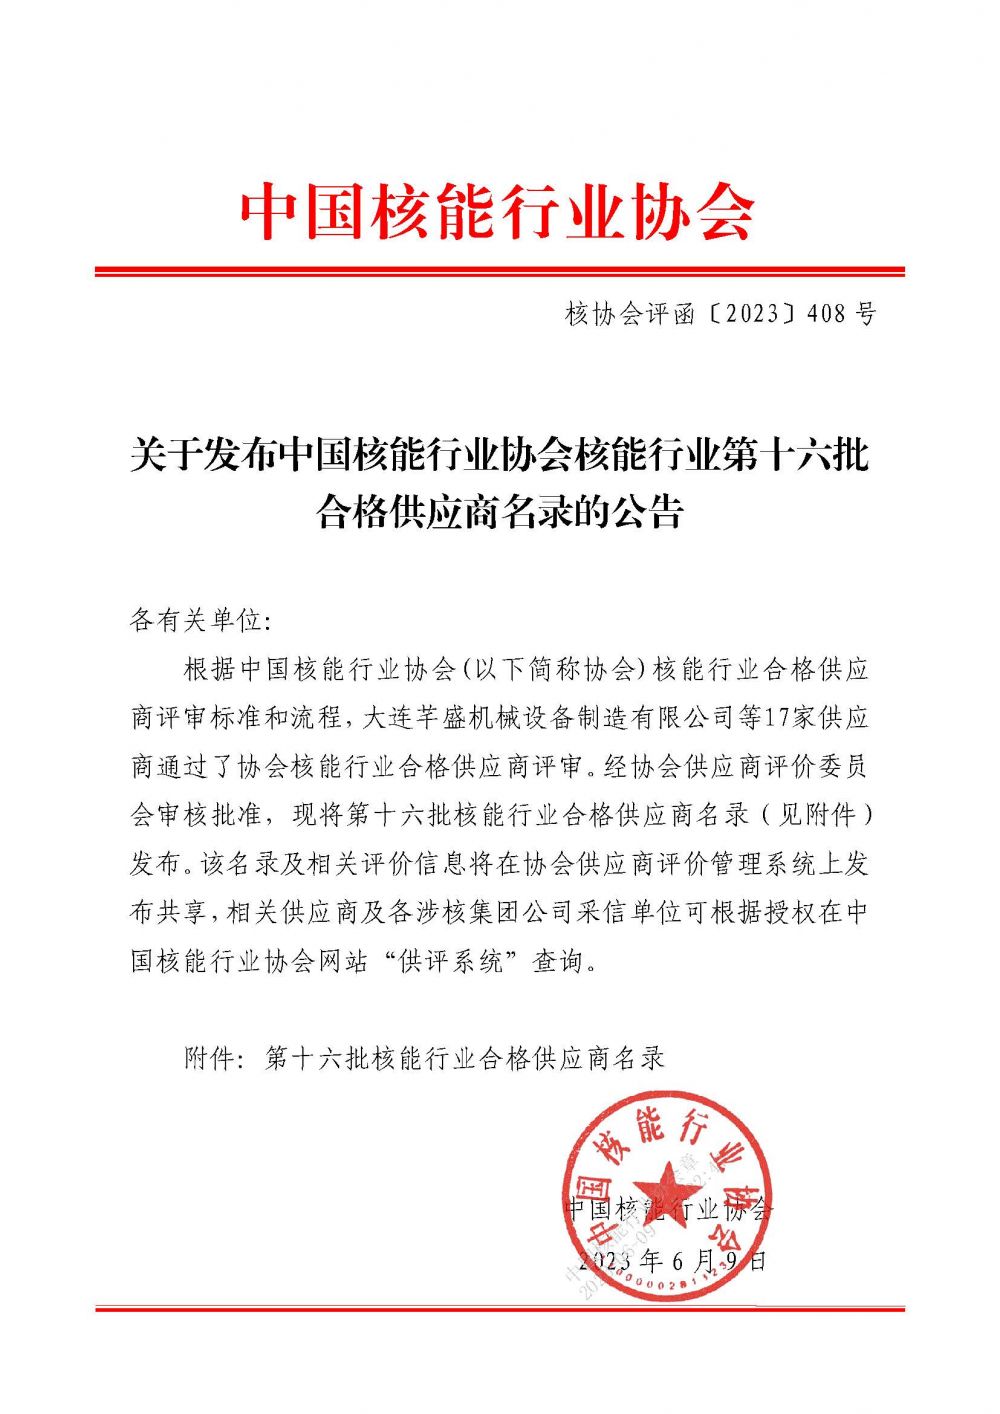 关于发布中国核能行业协会核能行业第十六批合格供应商名录的公告_页面_1.jpg